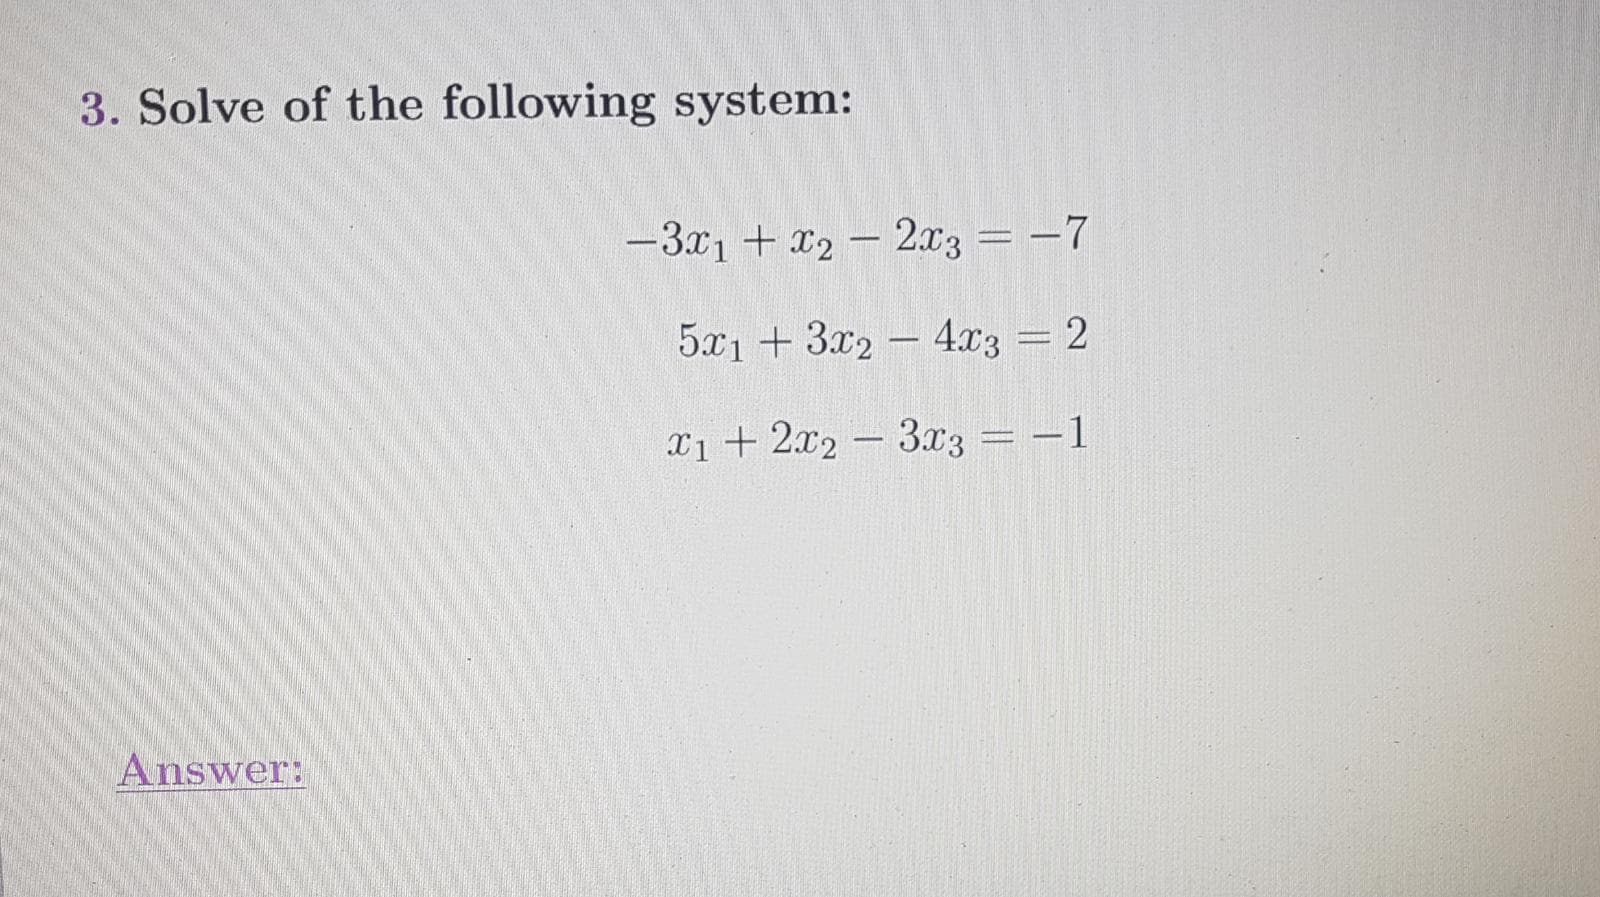 Solve of the following system:
-3x1 + x2 - 2x3 = -7
5x1 +3x2 -4.x3 = 2
%3D
X1 + 2x2 -3x3 = -1
